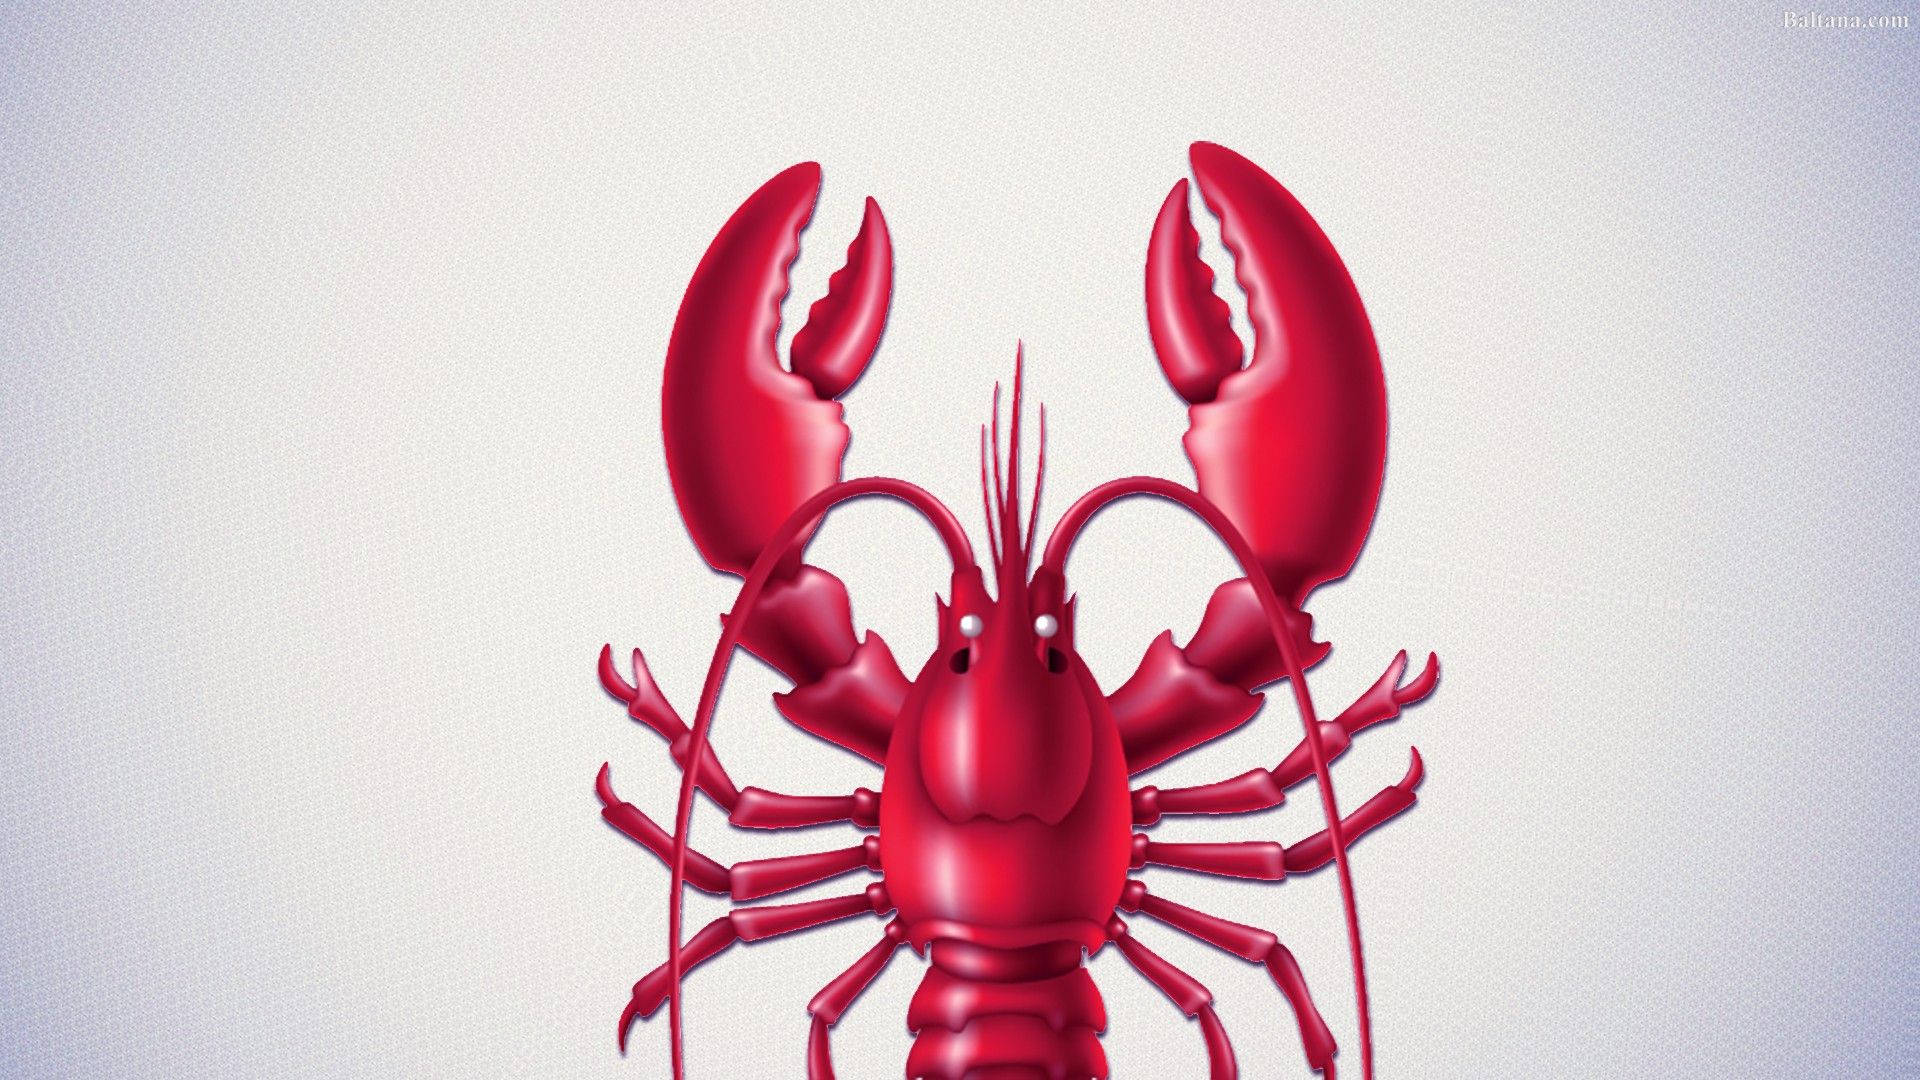 Adorable Lobster Illustration